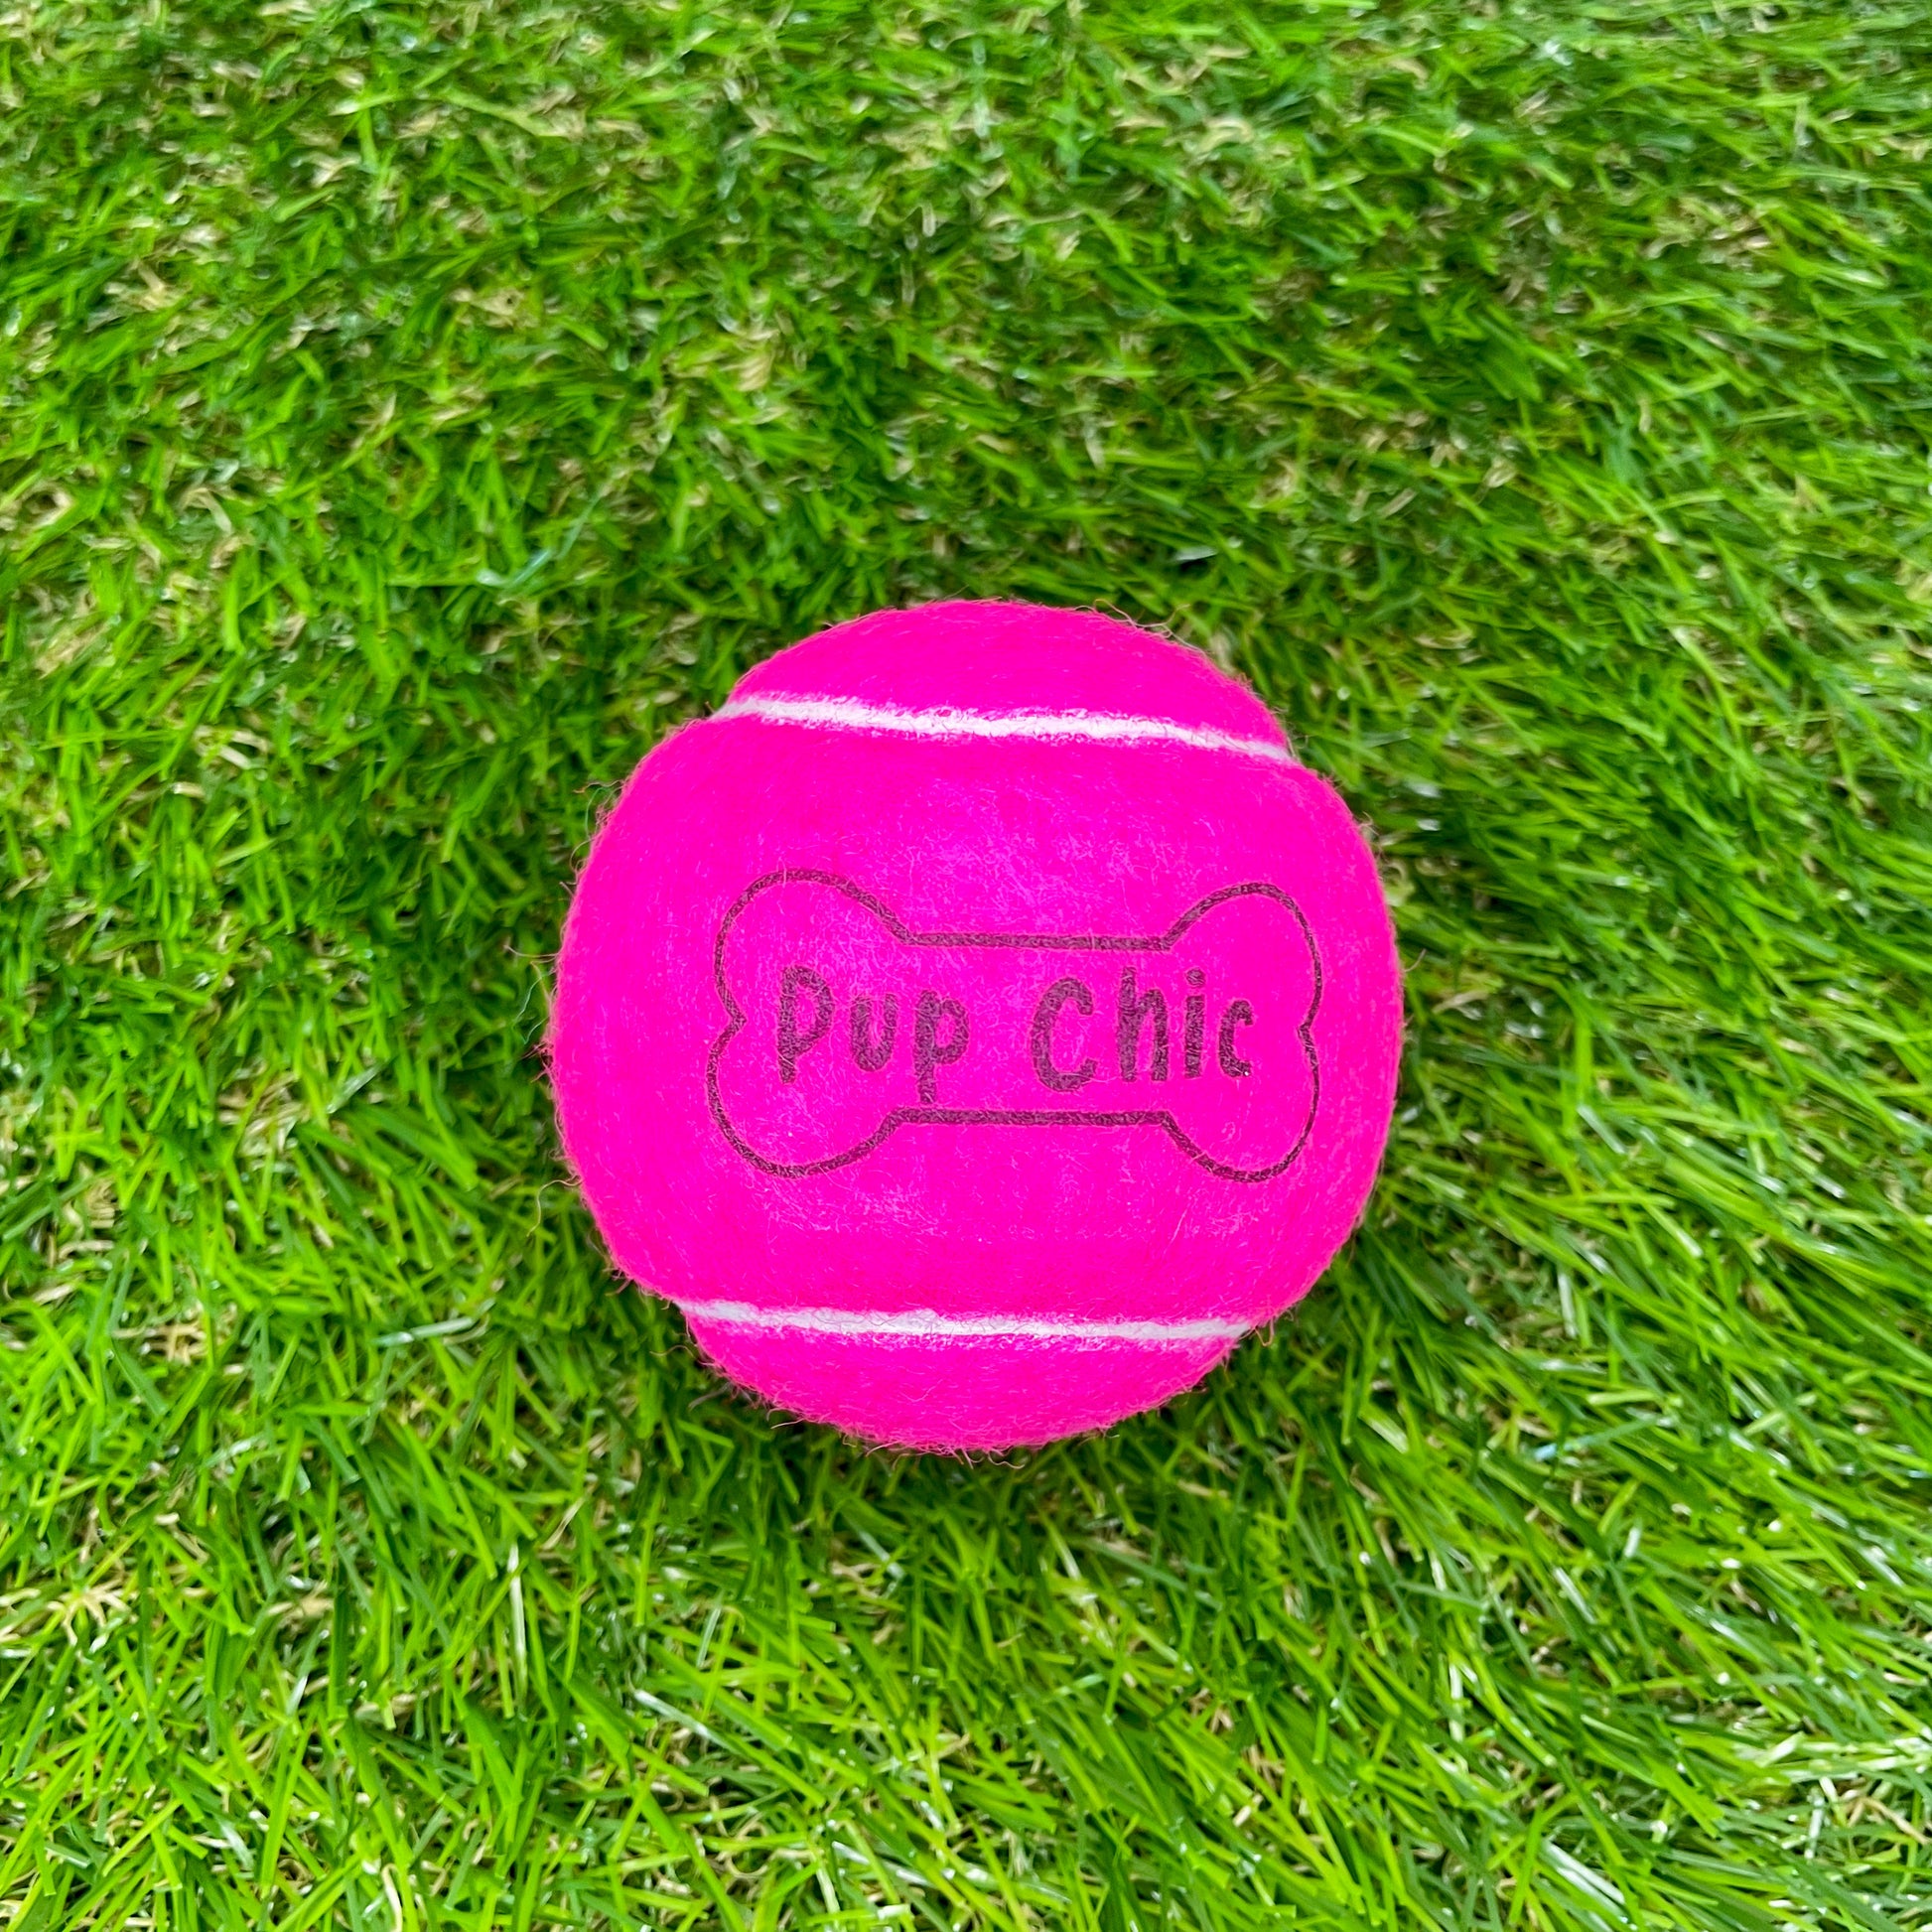 chic ball - standard size tennis ball hot pink